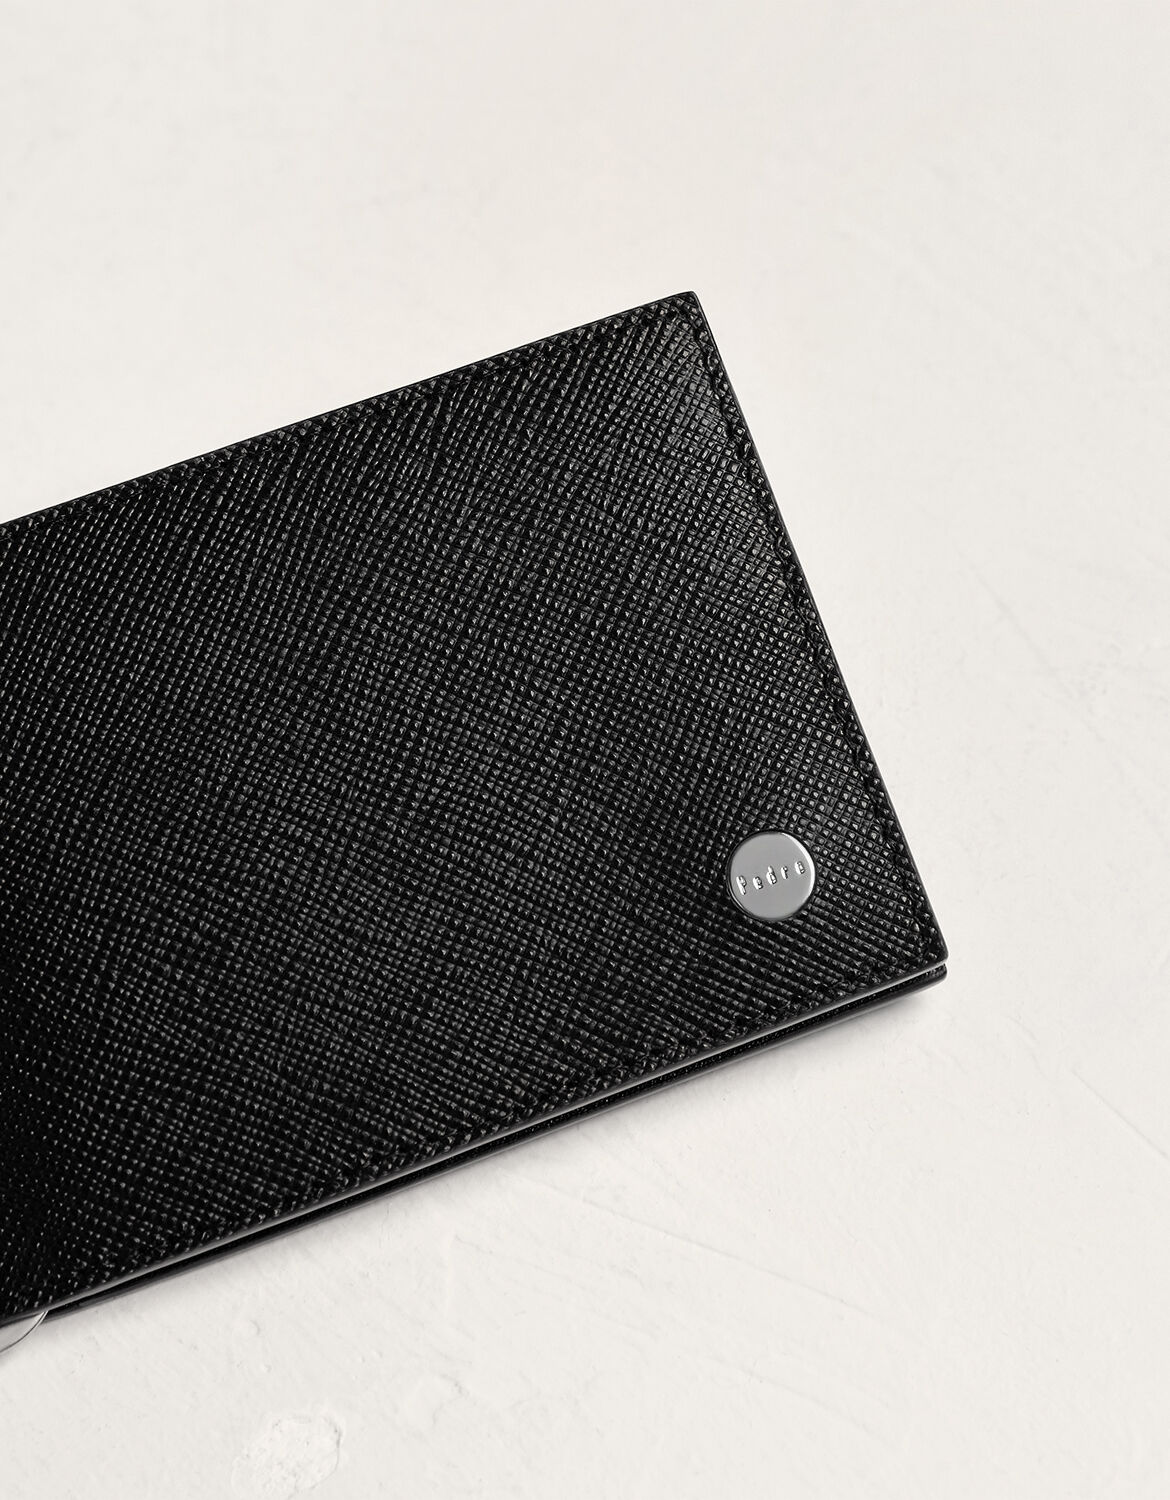 Black Bi Fold Mens S009 Scorteus Leather Money Clip Wallet, Card Slots: 6